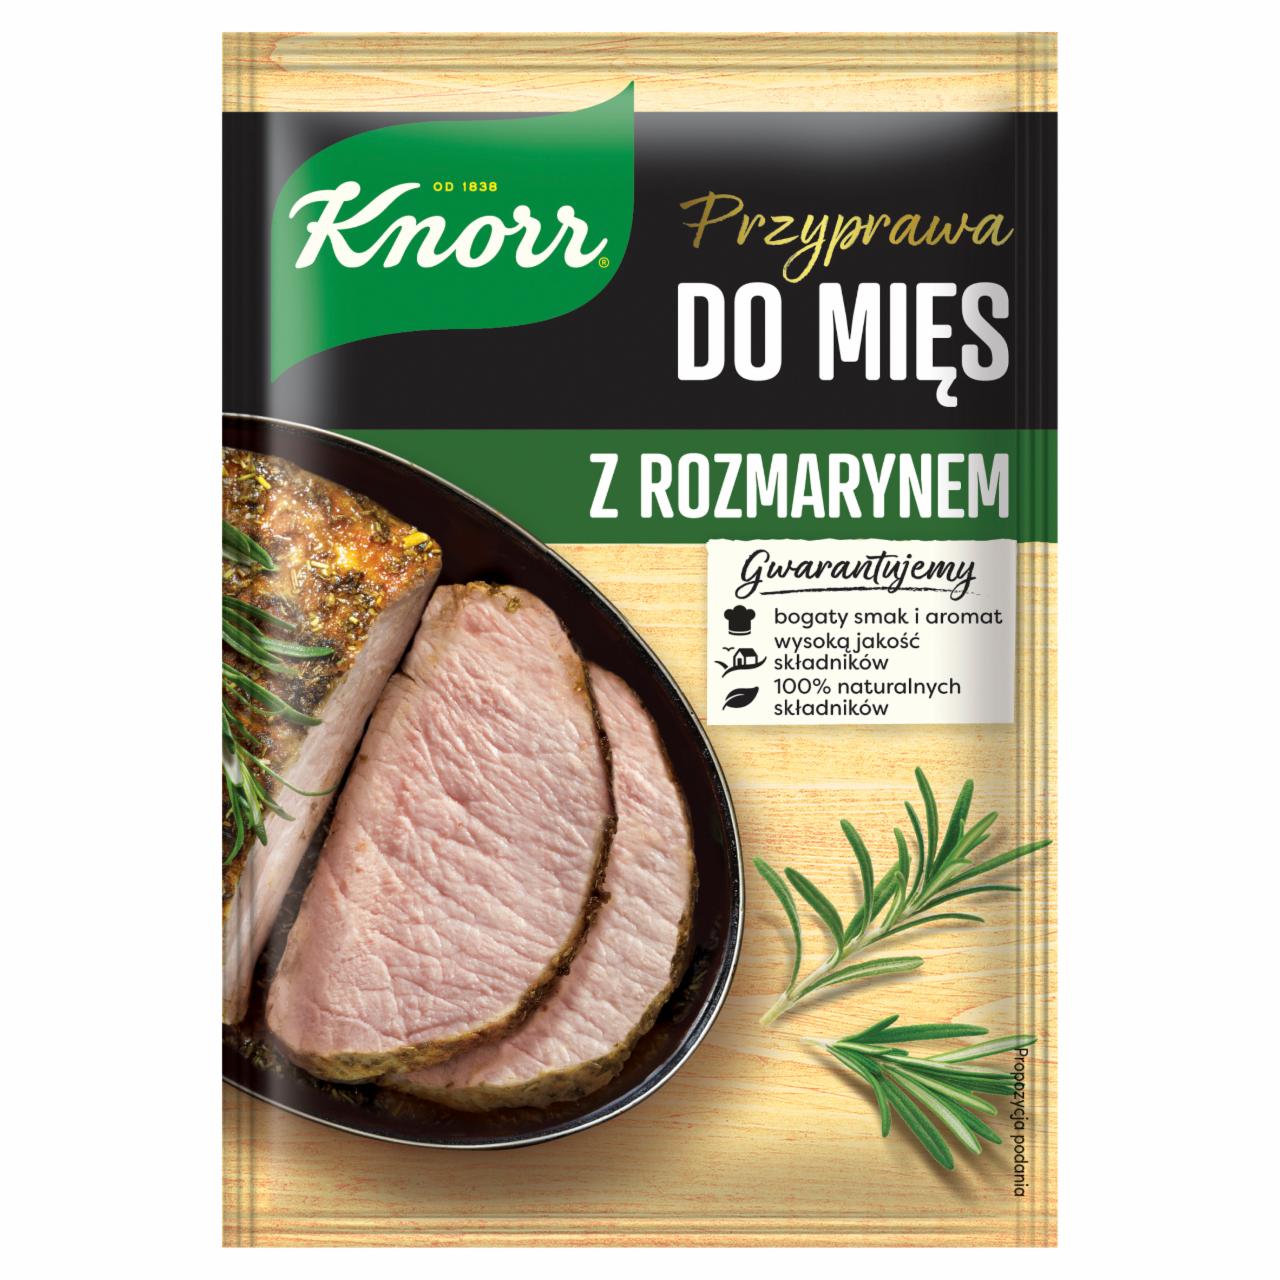 Zdjęcia - Knorr Przyprawa do mięs z rozmarynem 23 g